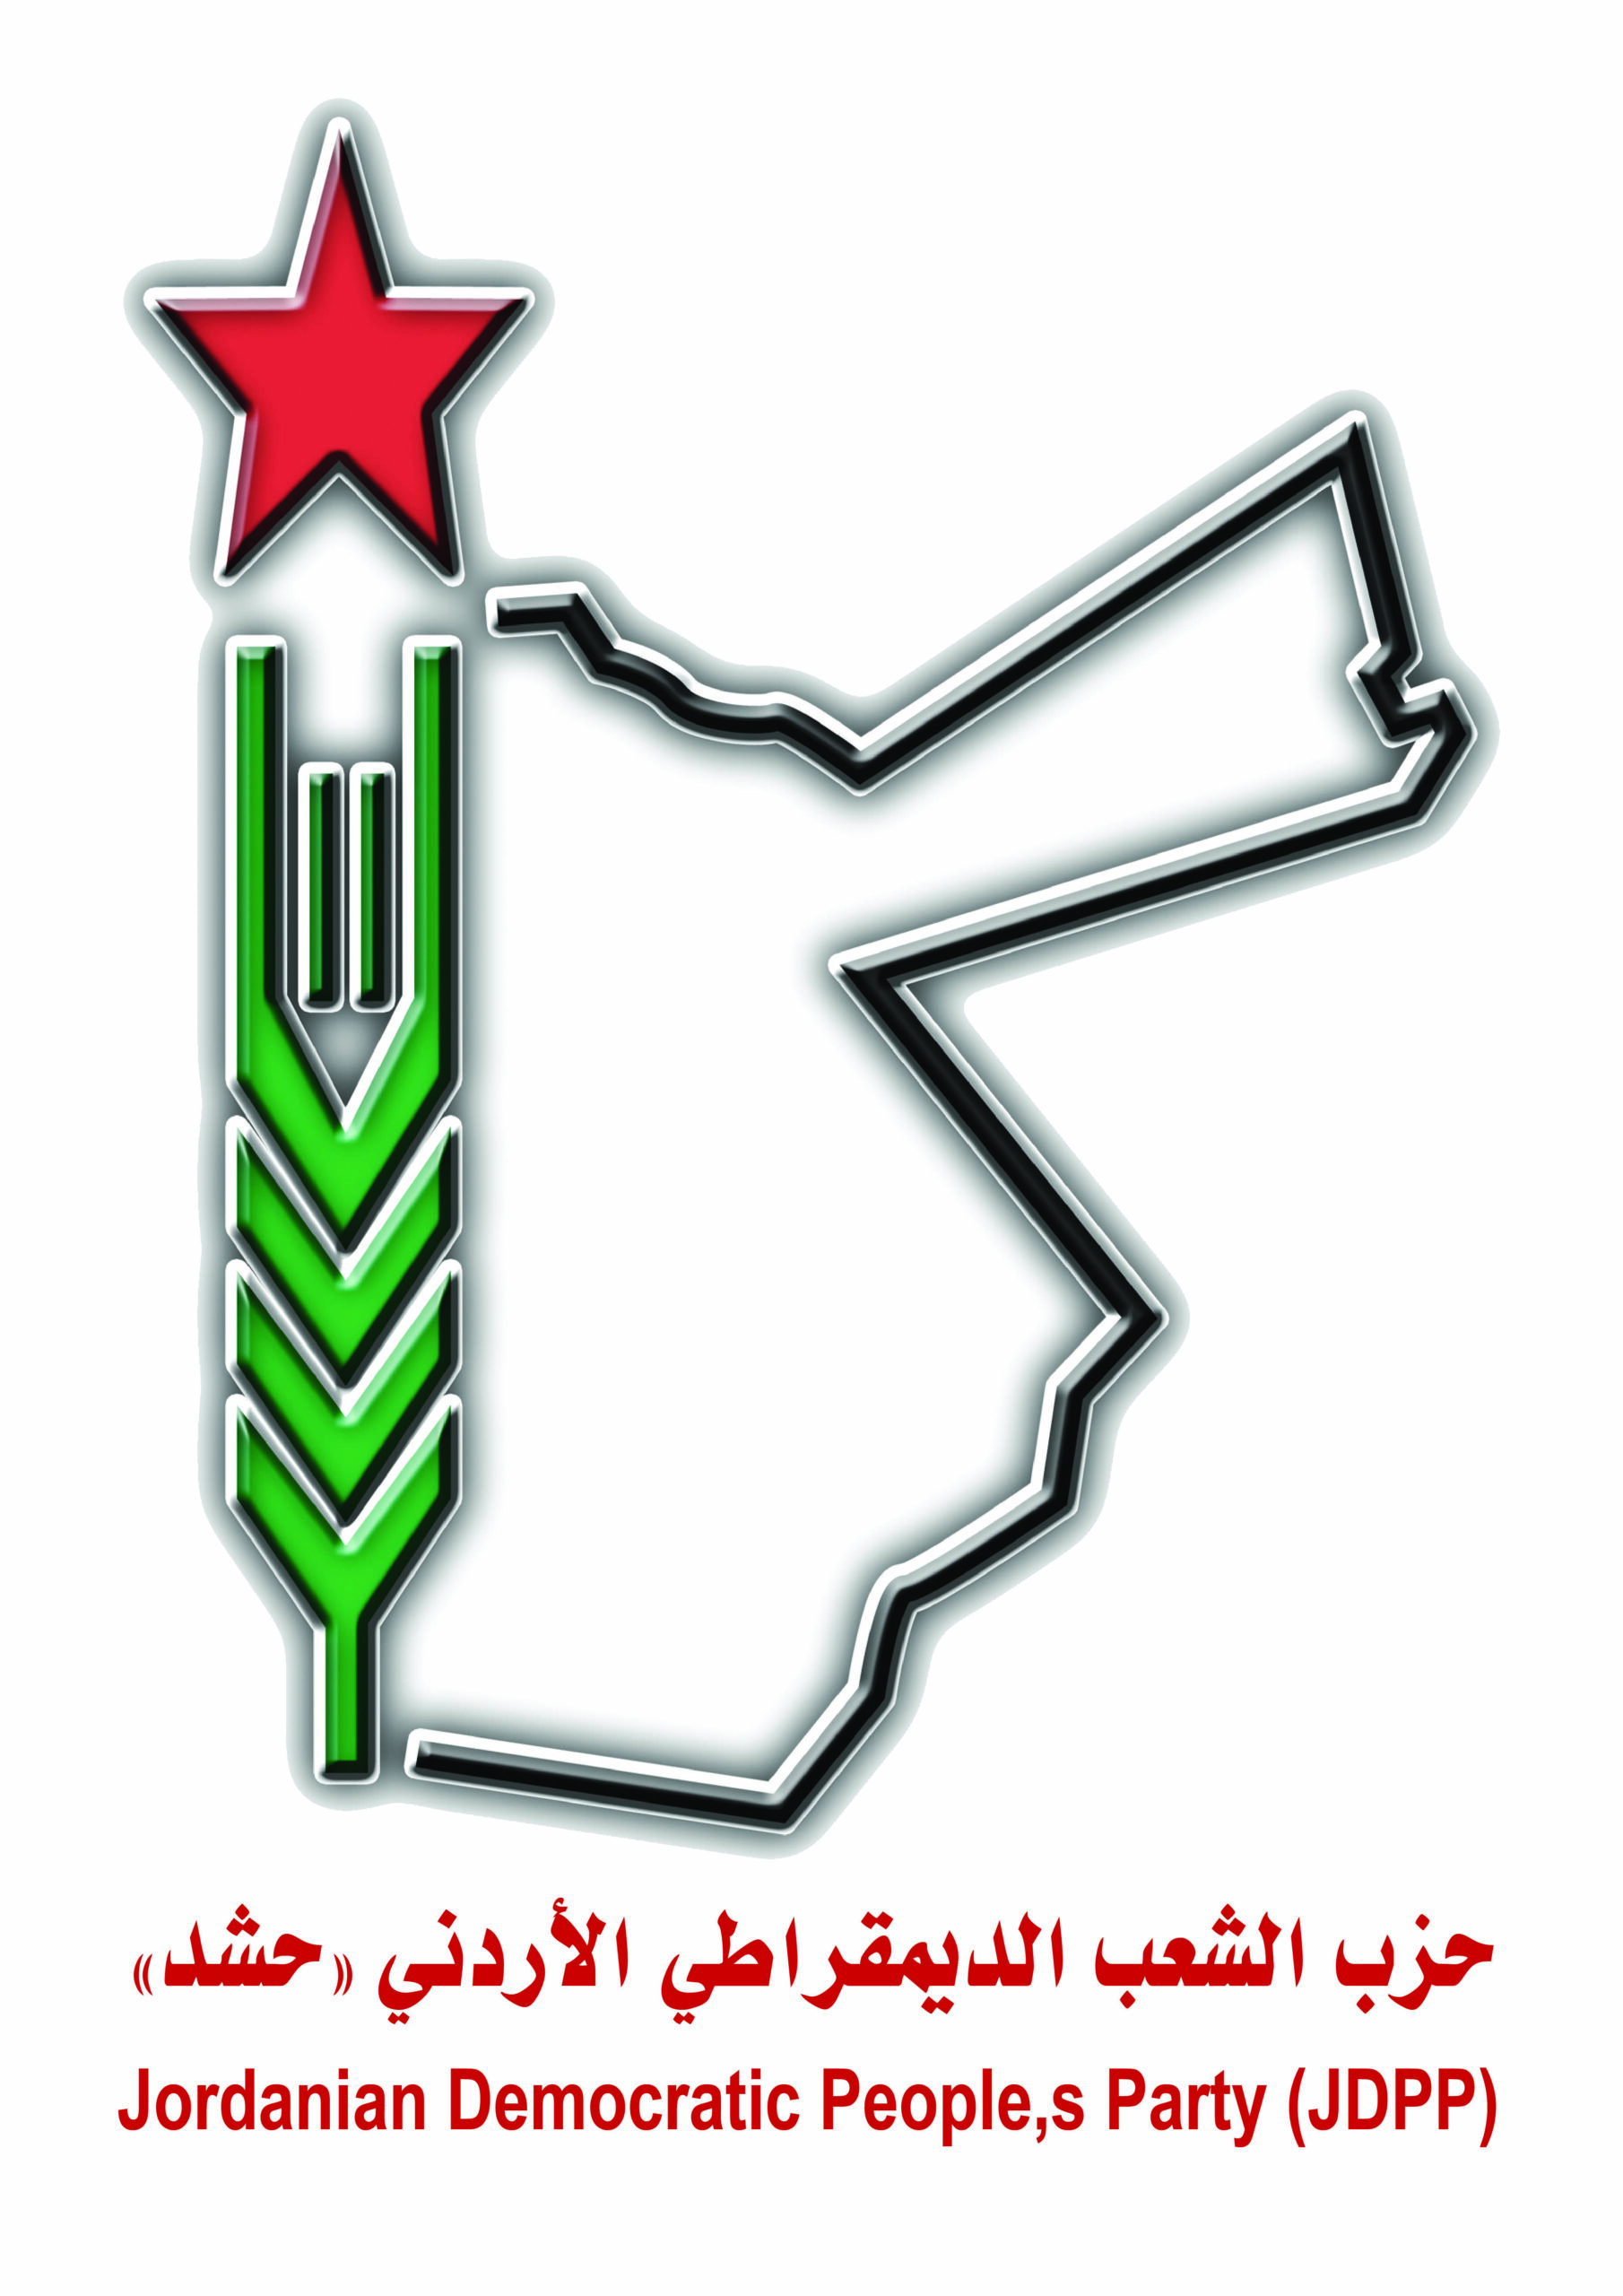 بلاغ صادر عن اللجنة المركزية لحزب الشعب الديمقراطي الأردني “حشد” ((دورة غزة))